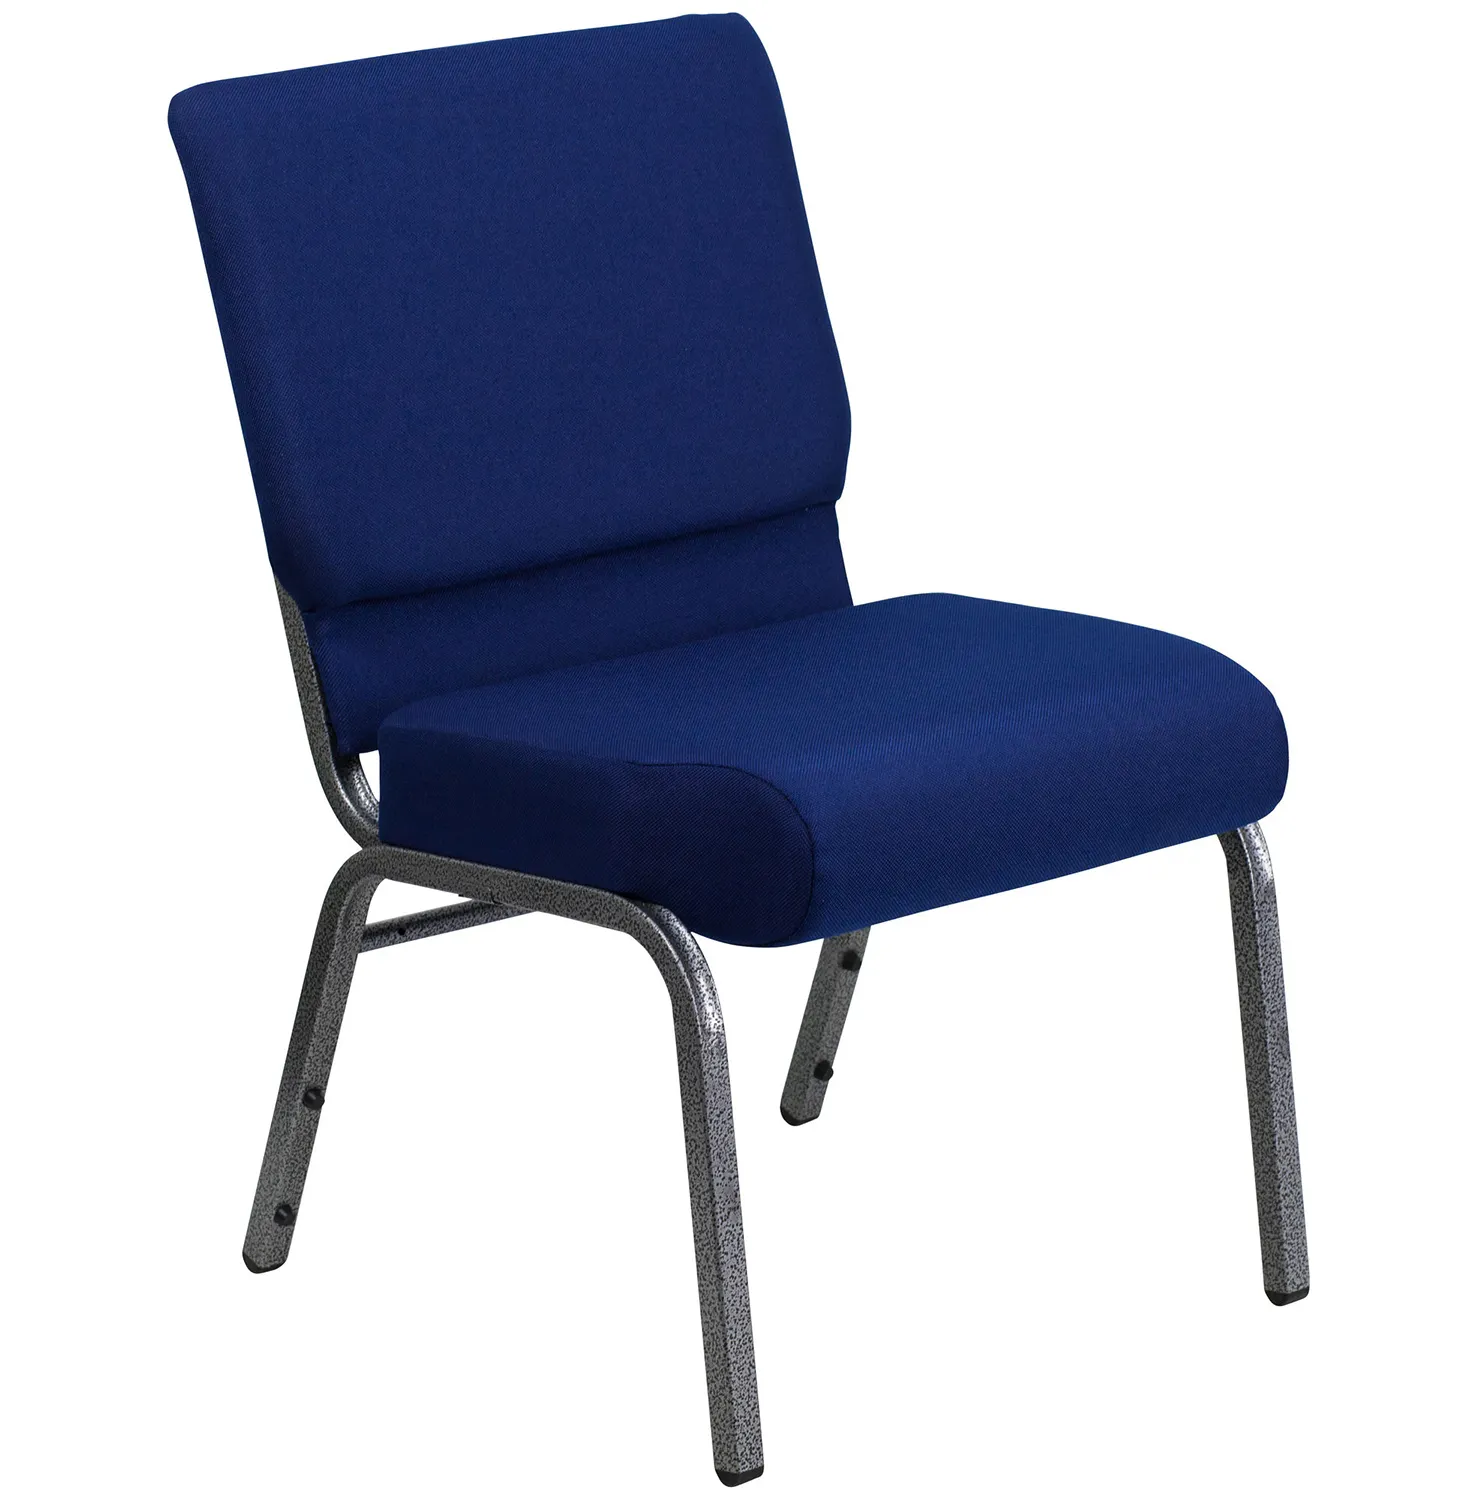 Marco de Metal tapizado de tela azul para uso en el auditorio, mueble de iglesia con bolsillo trasero, precio de silla de Iglesia